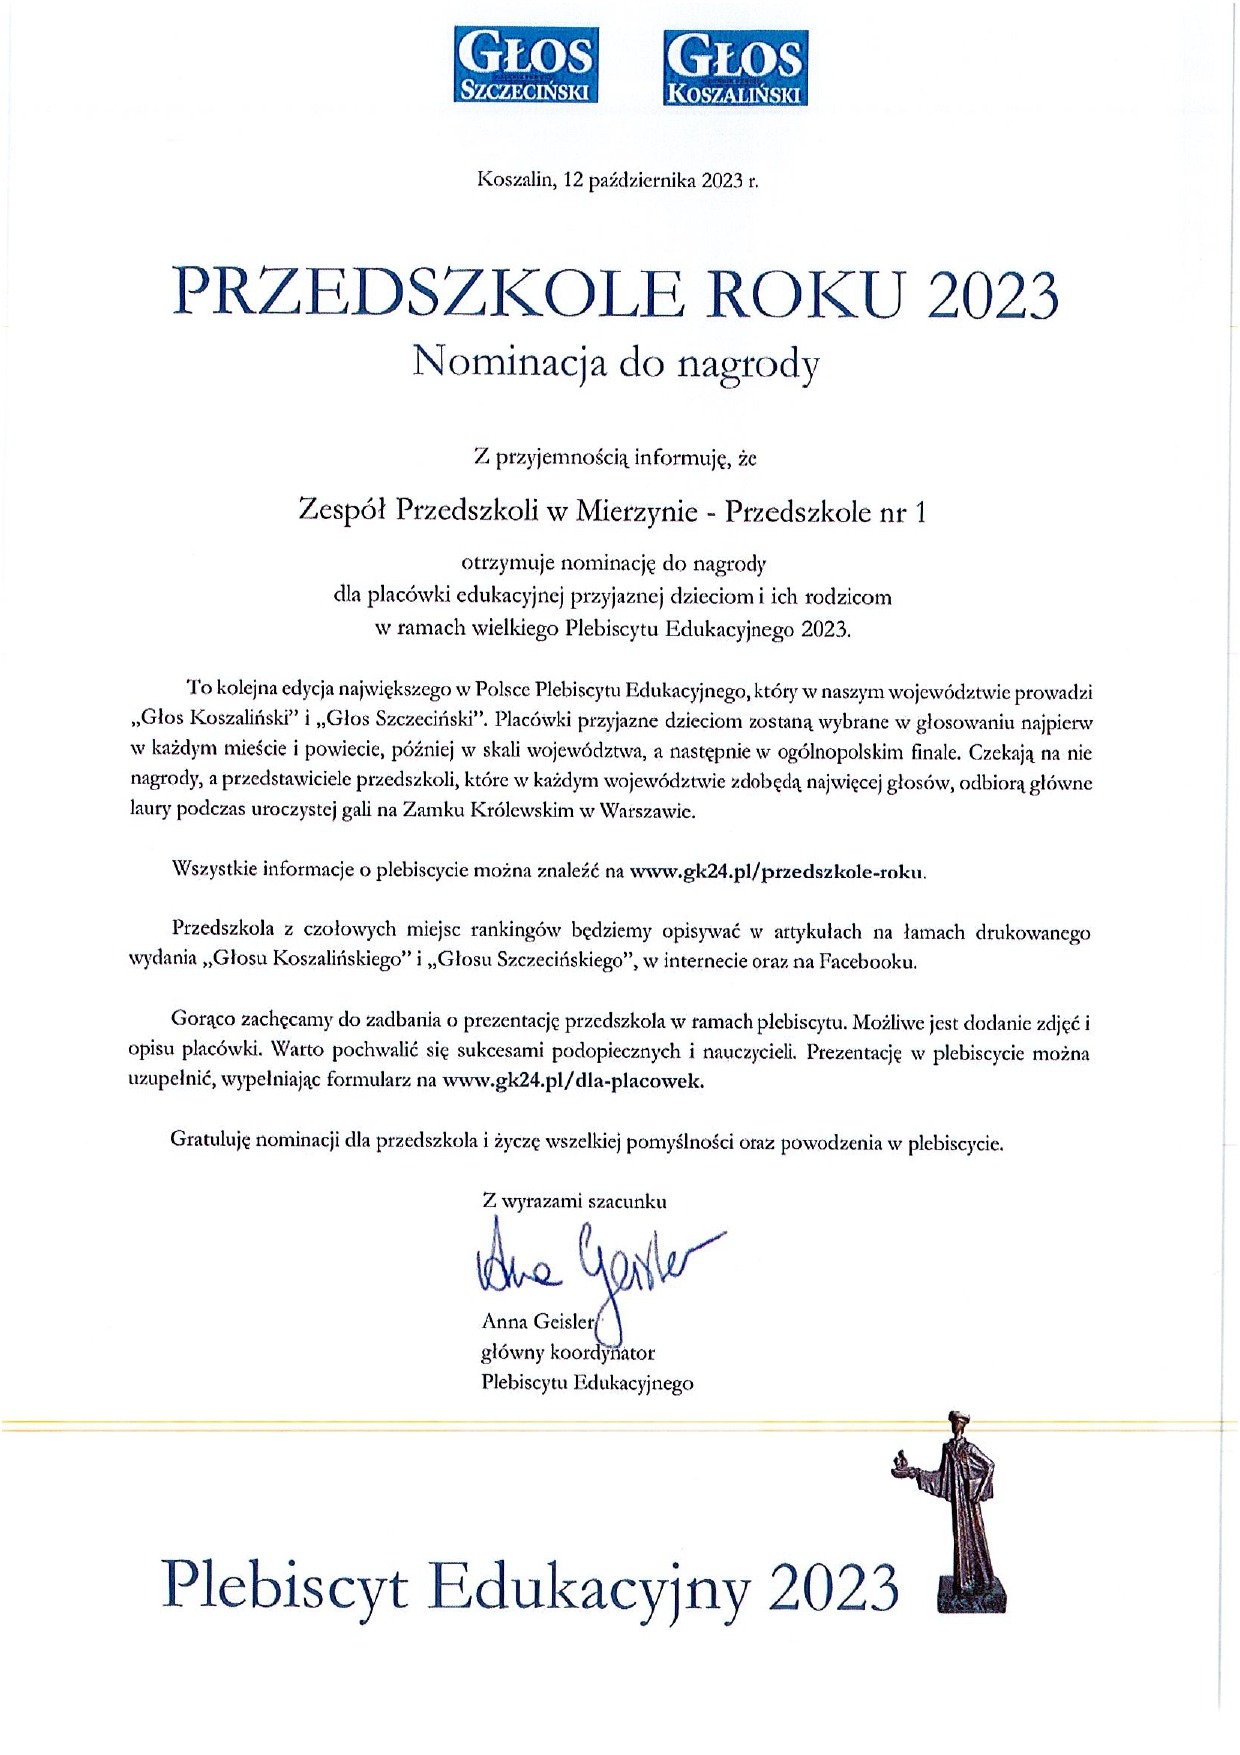 Nominacje w Plebiscycie Edukacyjnym 2023 - Obrazek 1